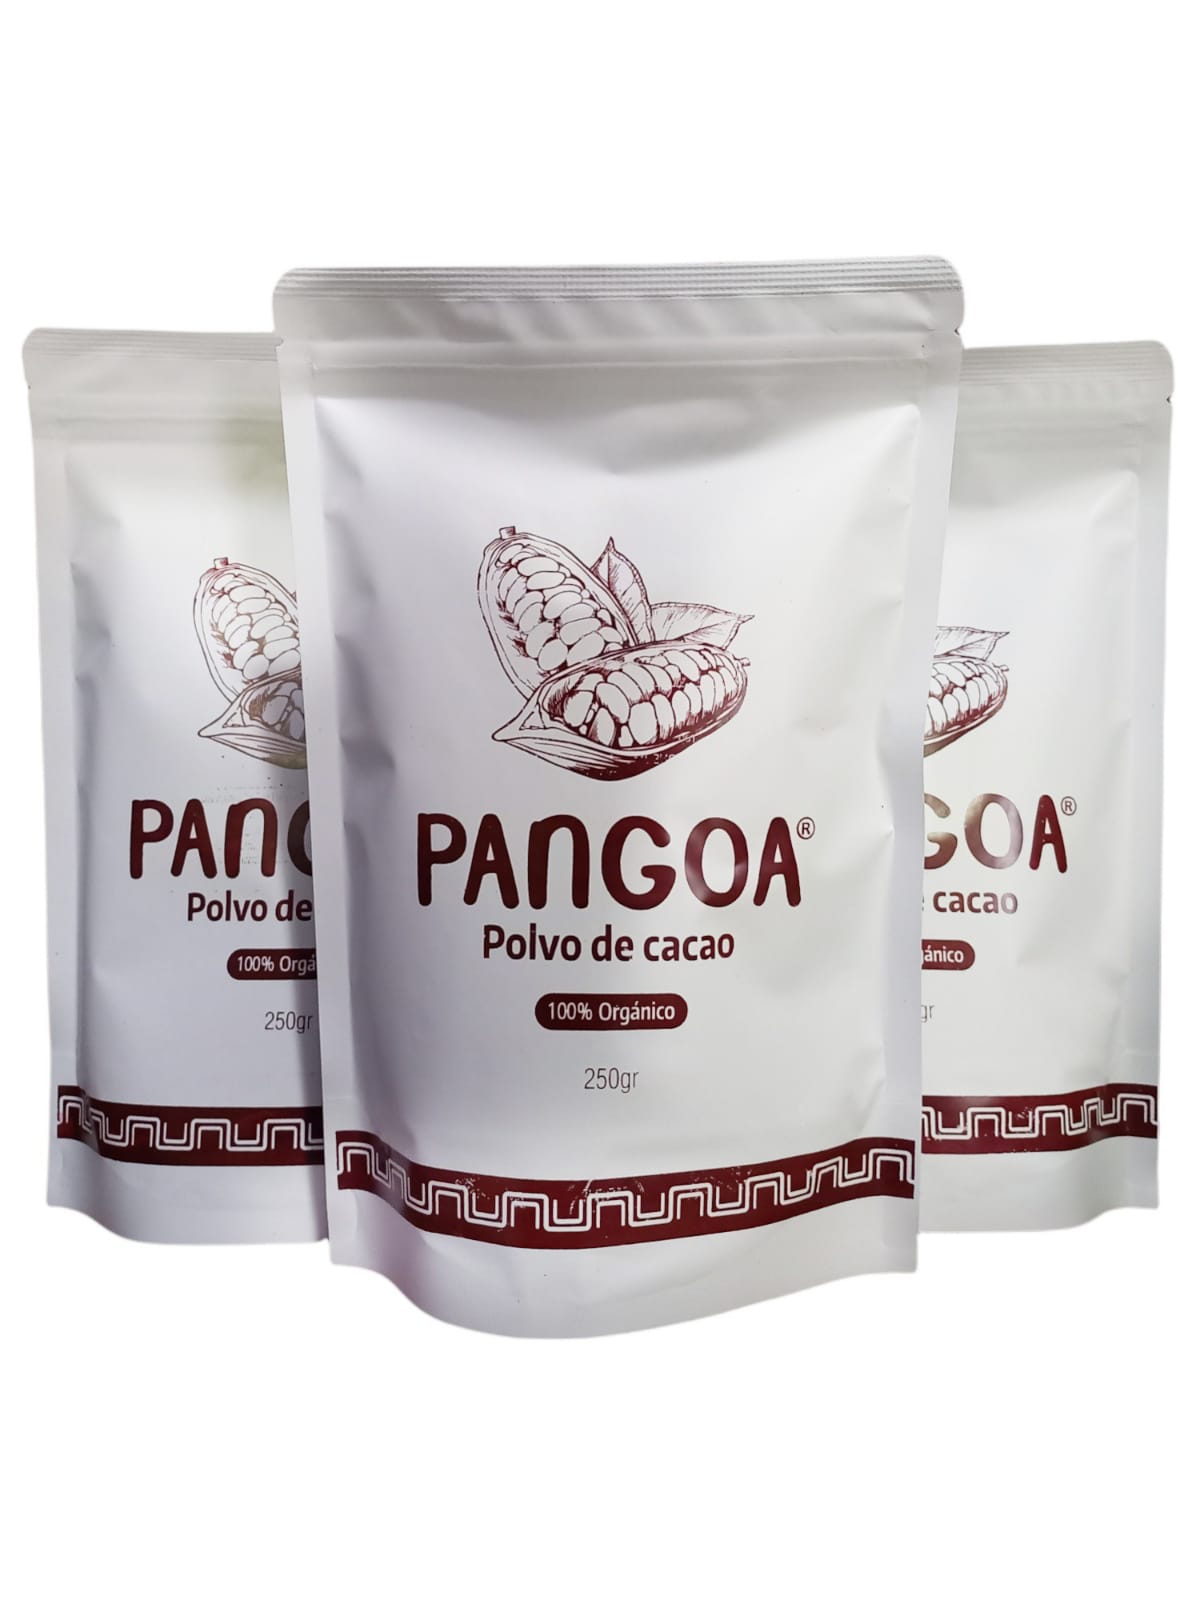 Producto RelacionadoPolvo de Cacao 250g